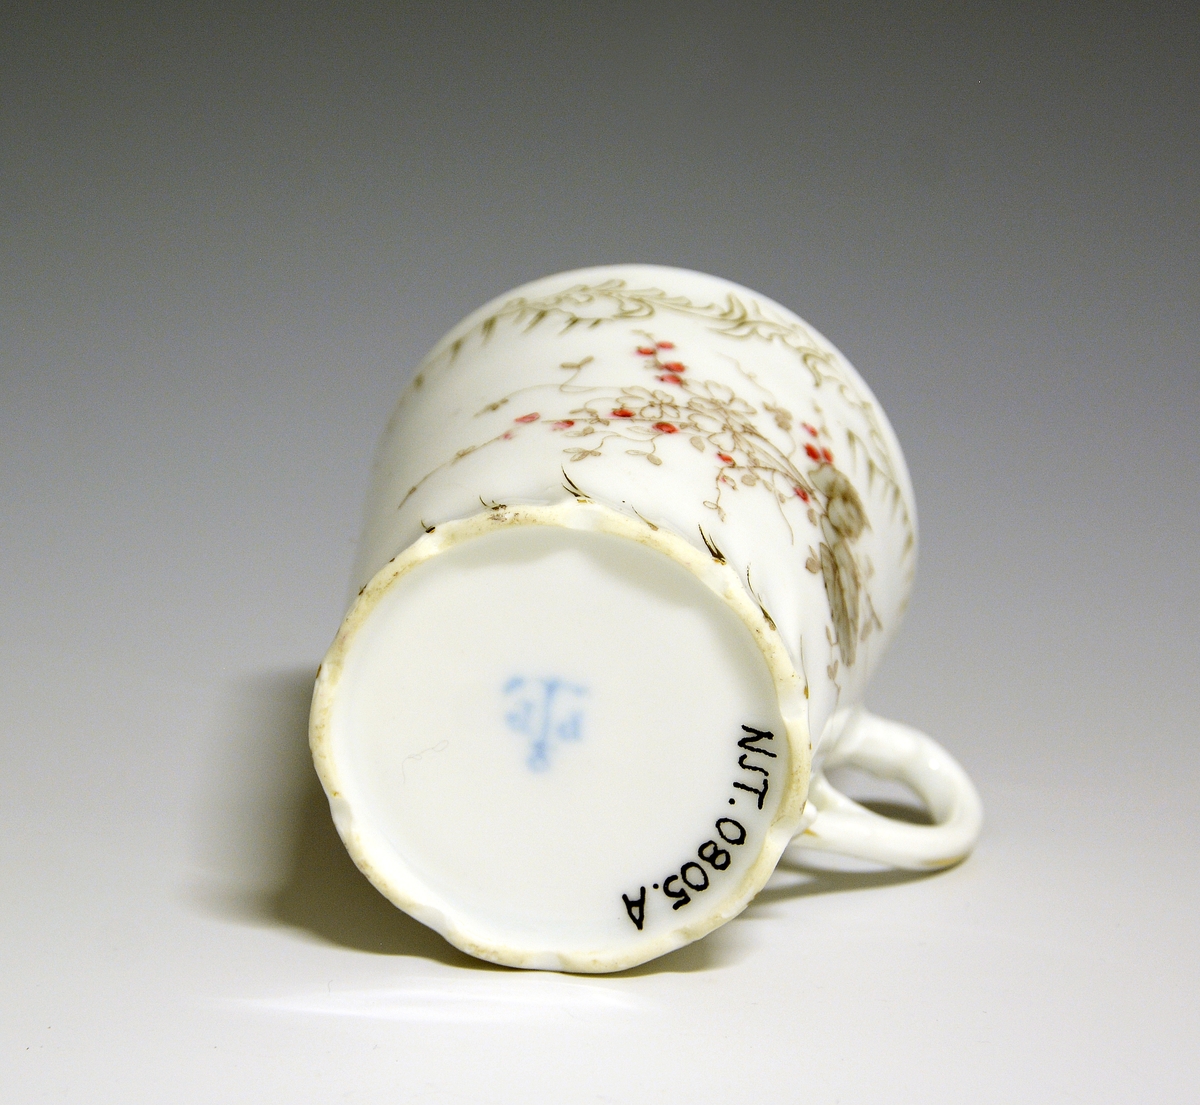 Kaffekopp av porselen med hvit glasur. Nypeblomstmotiv i hånkolorert ståltrykk. Snodd relieff i langs fotranden.
Modellnr.: 316.4
Dekor: Ståltrykk og håndmaling